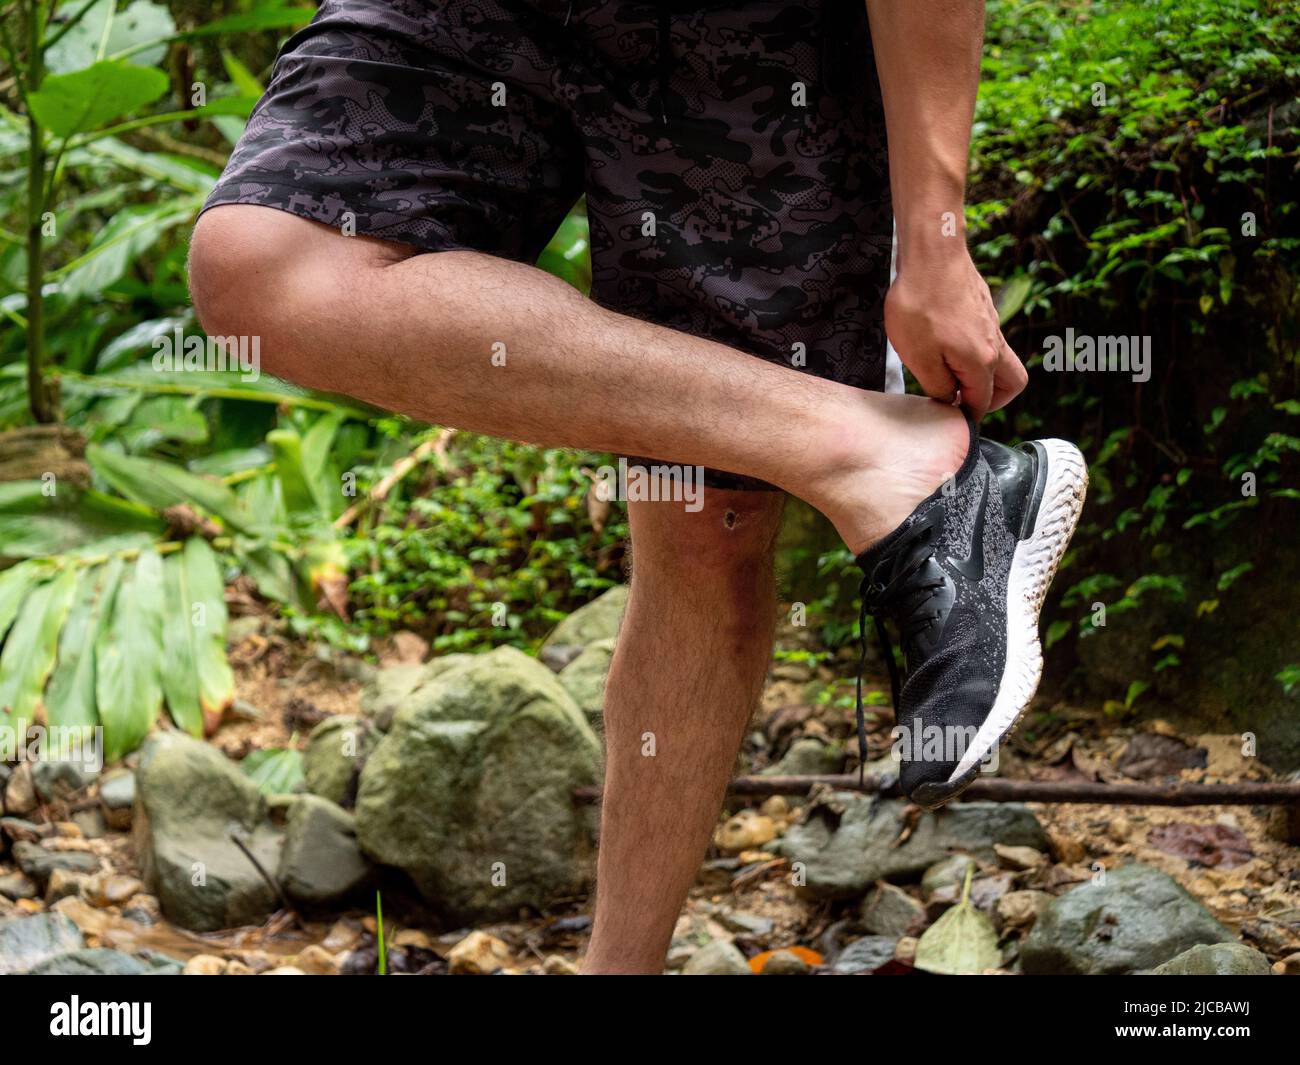 La Estrella, Antioquia, Kolumbien - 13 2022. Februar: Der Mann zieht seine Schuhe aus der schmutzigen Straße des Waldes Stockfoto